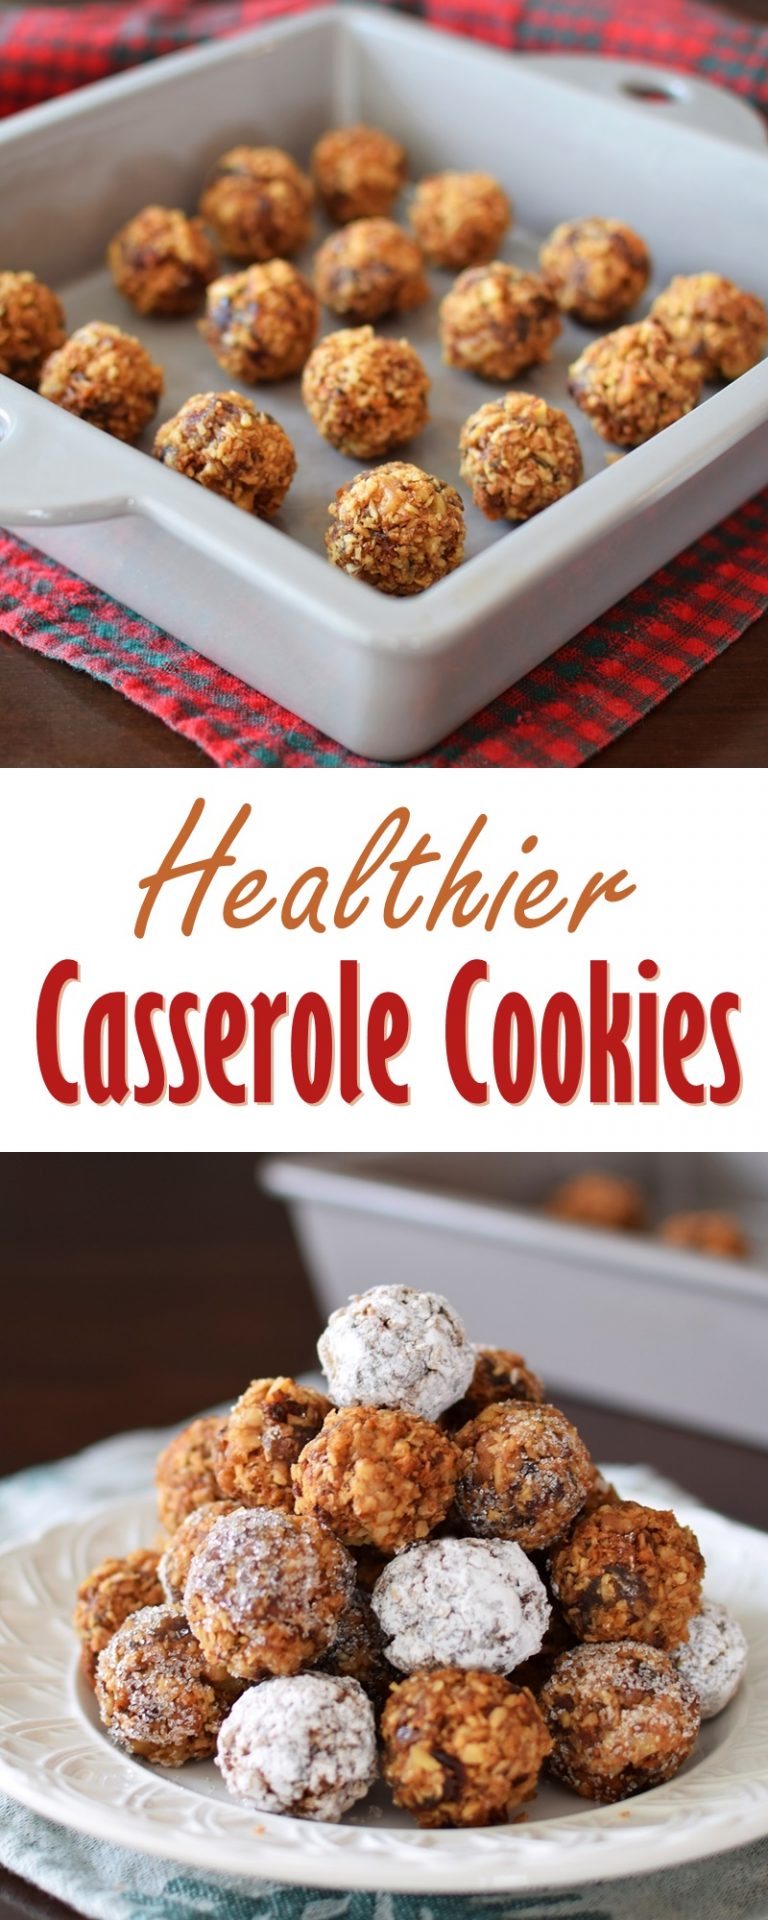 Casserole Cookies (Dairy-free, Gluten-free & Healthier!)